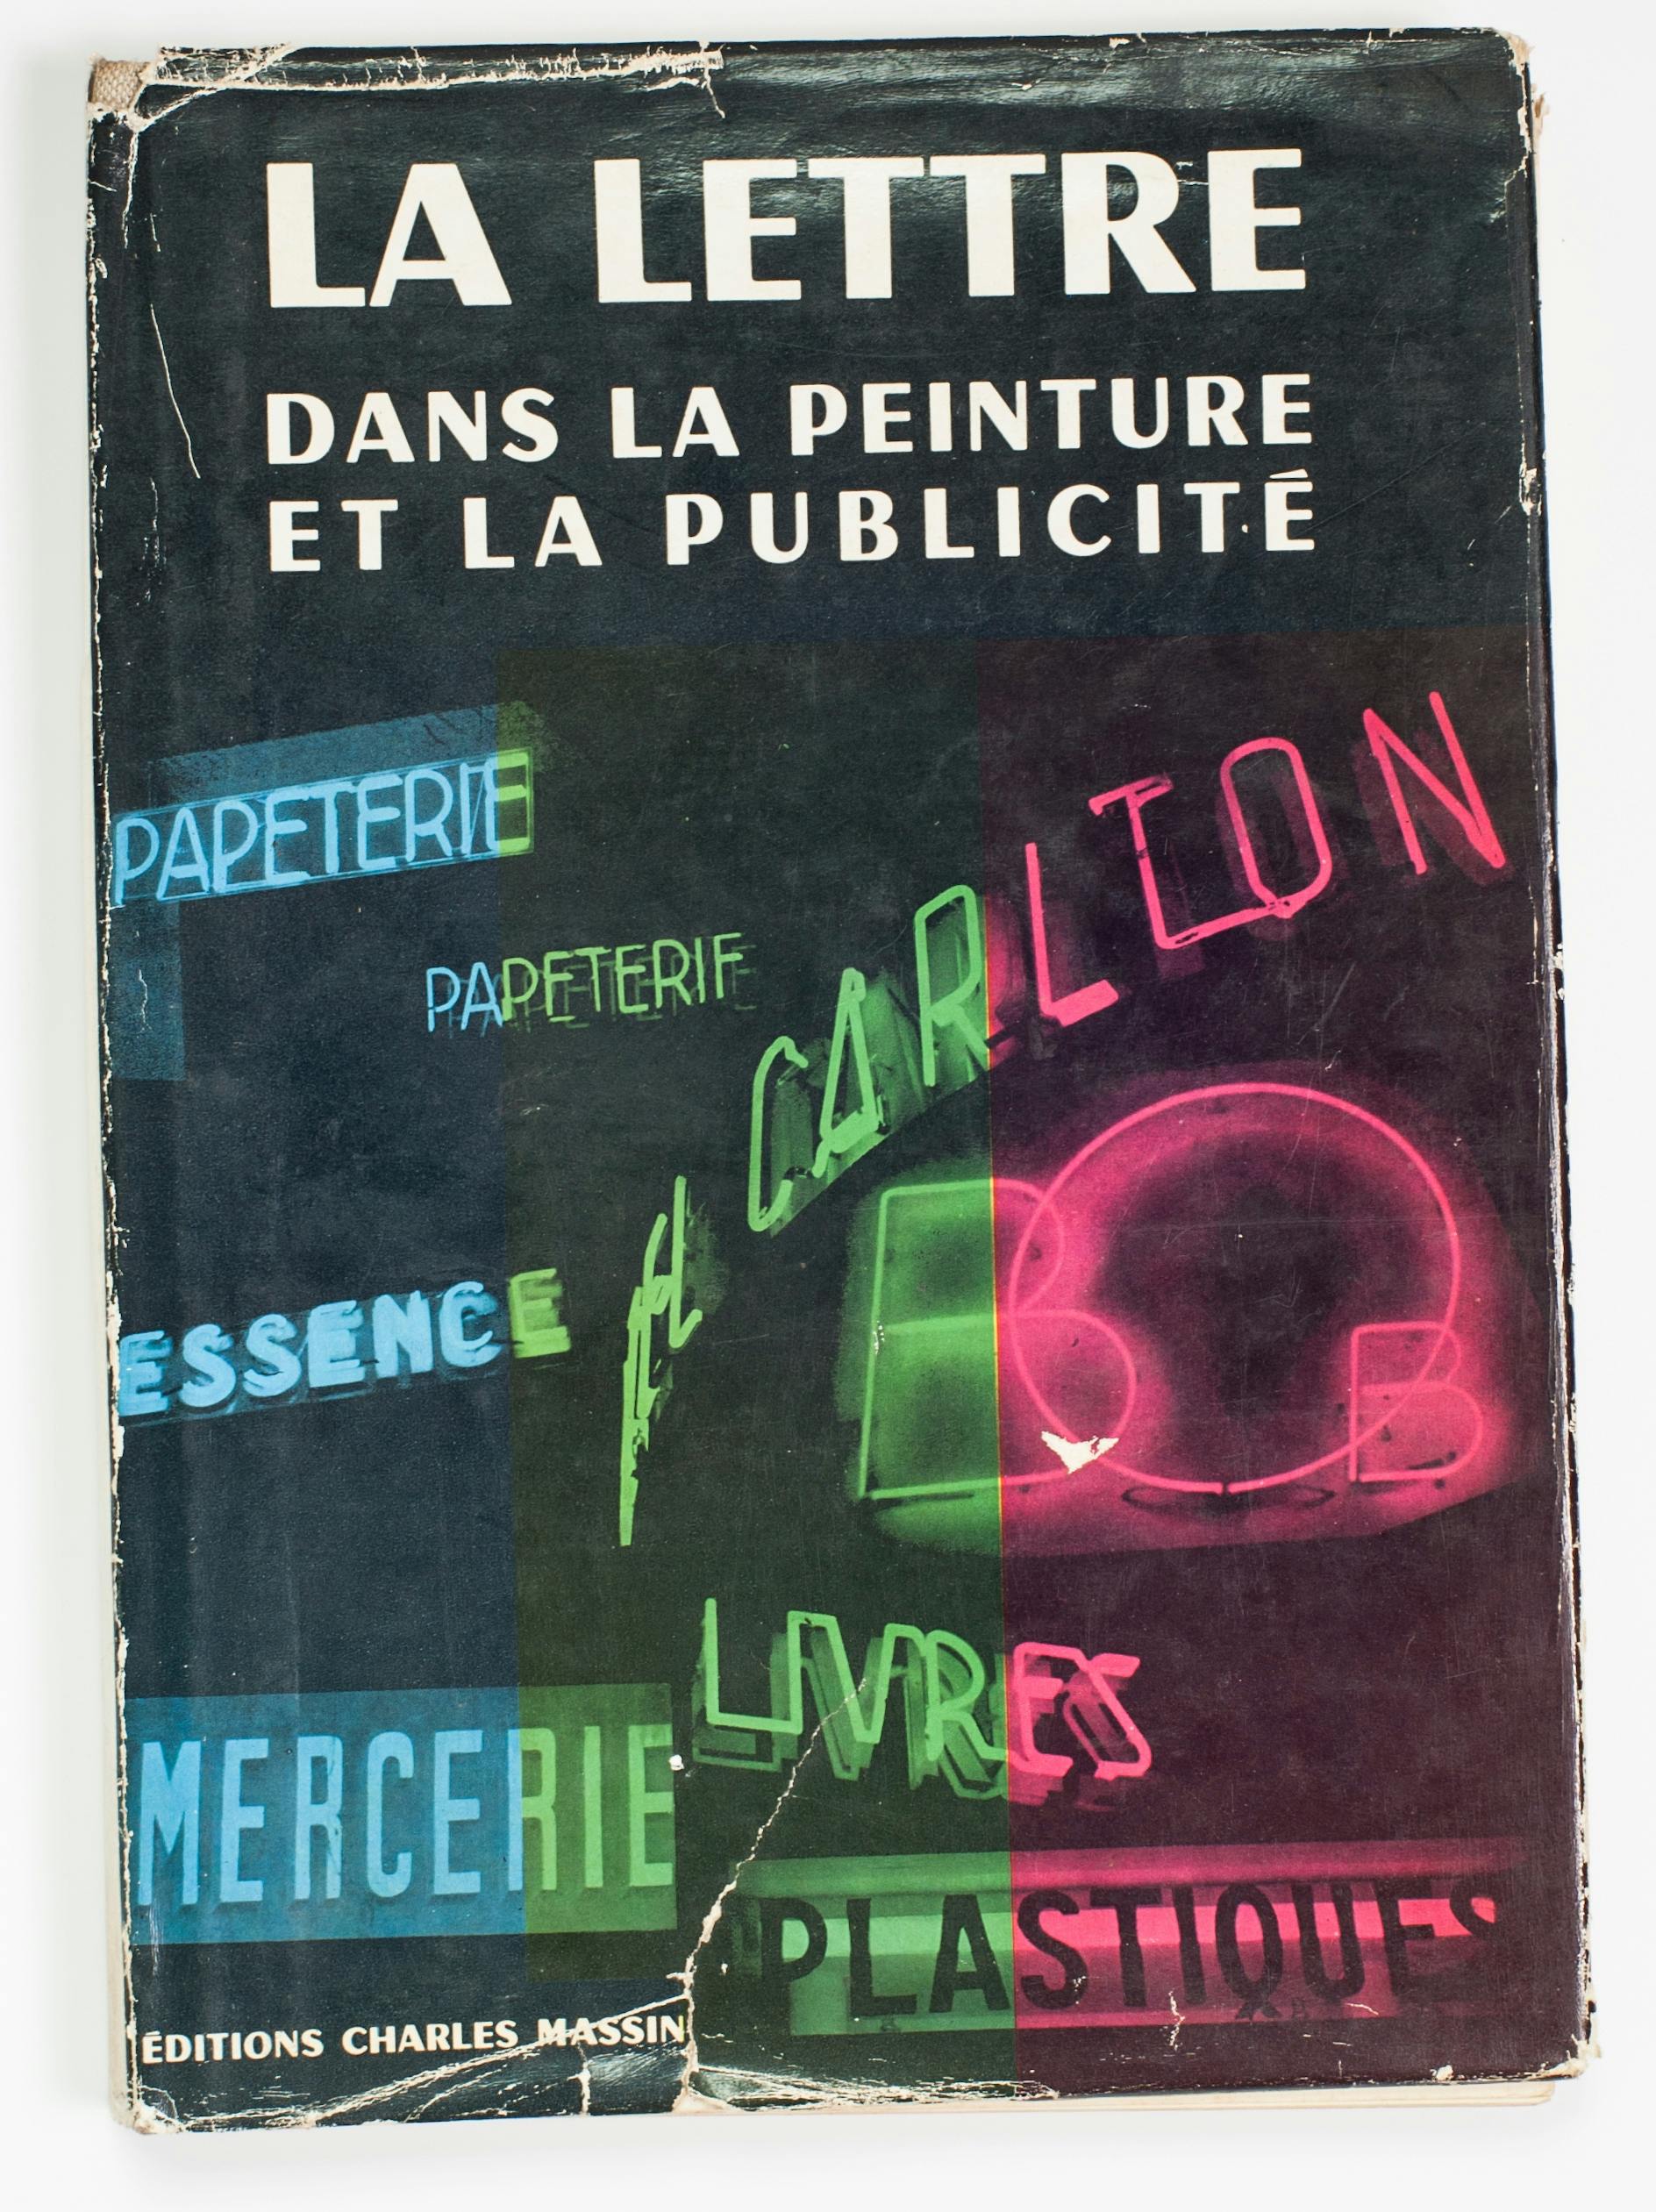 Joveneaux, La lettre dans la peinture et la publicité, ed. Charles Massin, 1950.